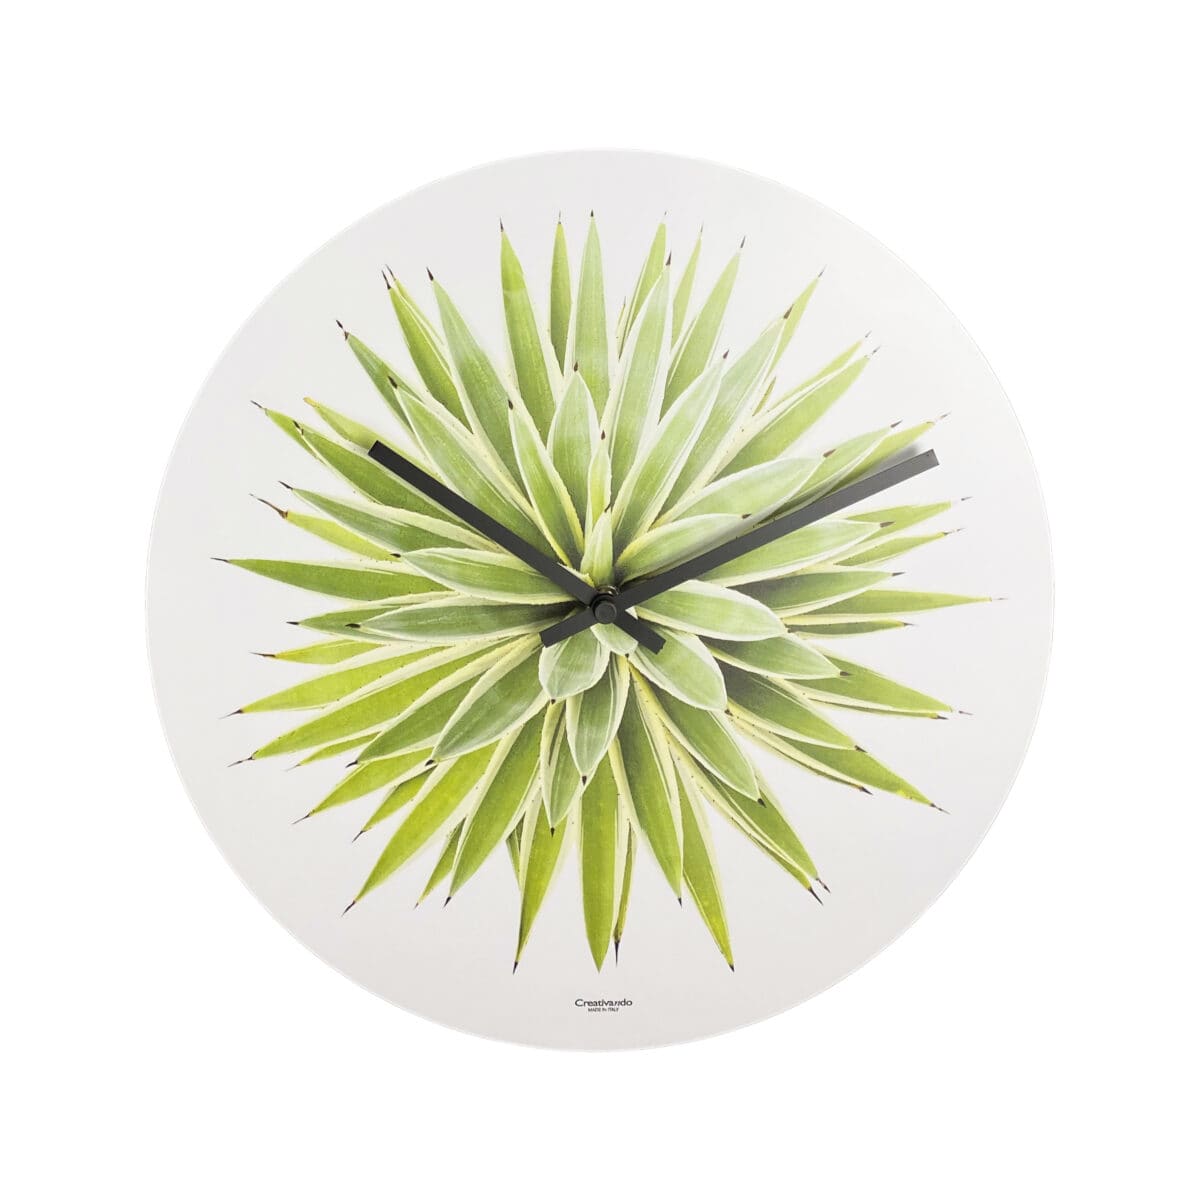 l'immagine fotorealistica di un agave fa da elemento grafico per un orologio da parete bianco e rotondo